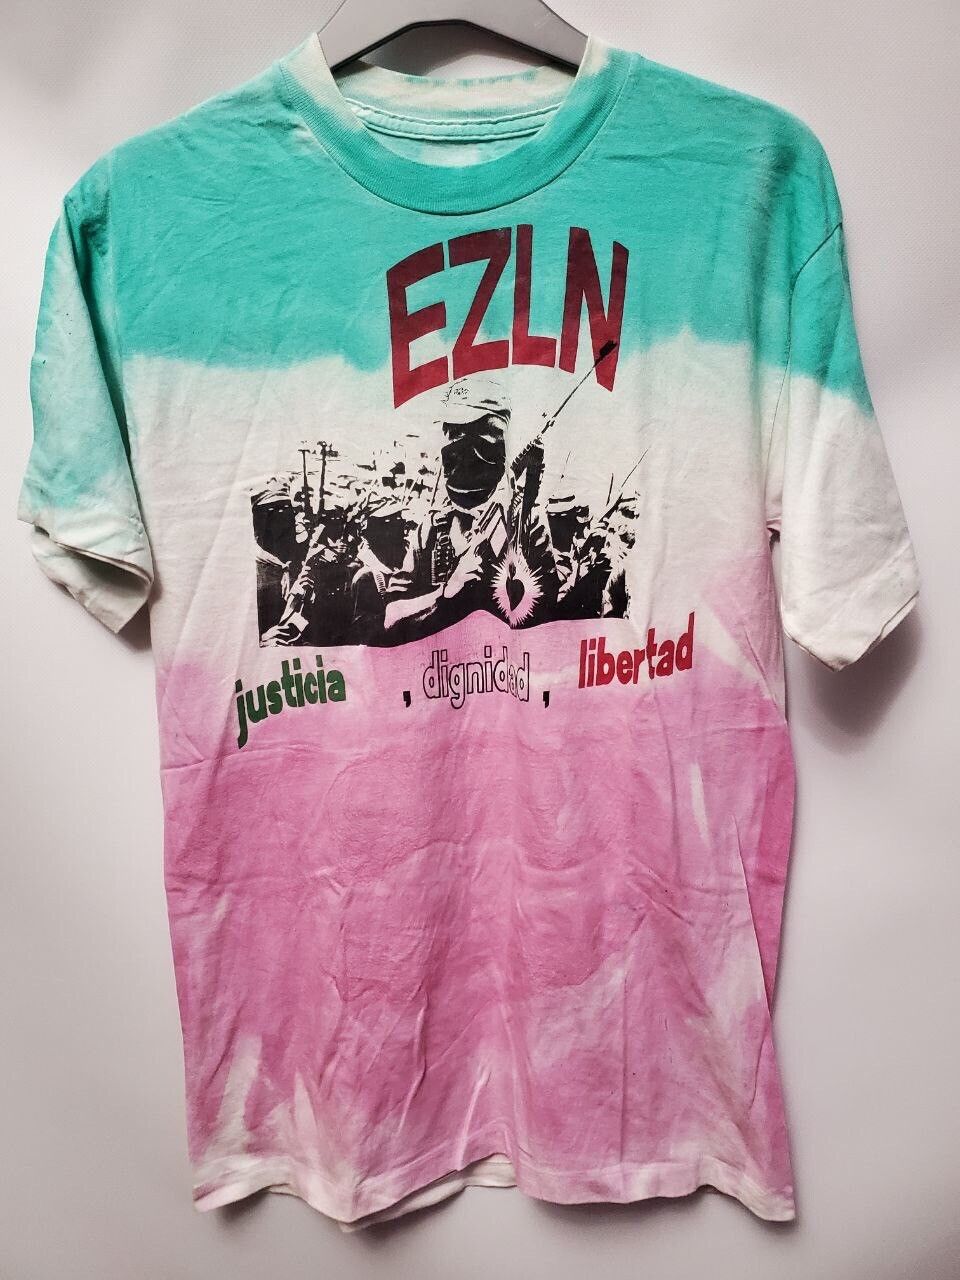 Very Rare EZLN Emiliano Zapata Revolution Vintage Rare 90s War T-shirt Size US L / EU 52-54 / 3 - 1 Preview